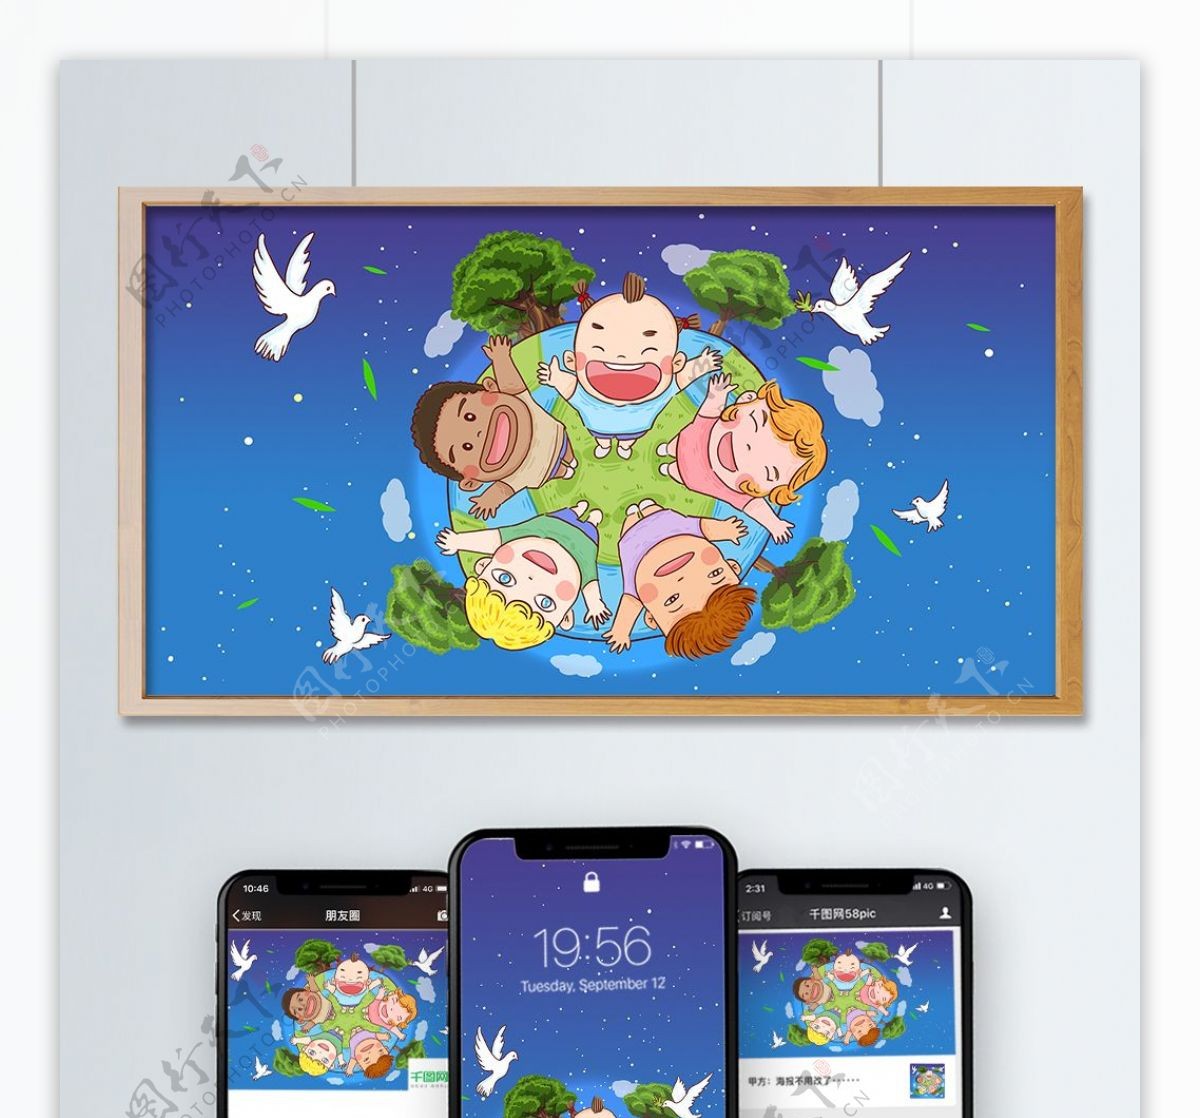 世界和平日全世界各国小孩放飞和平鸽插画